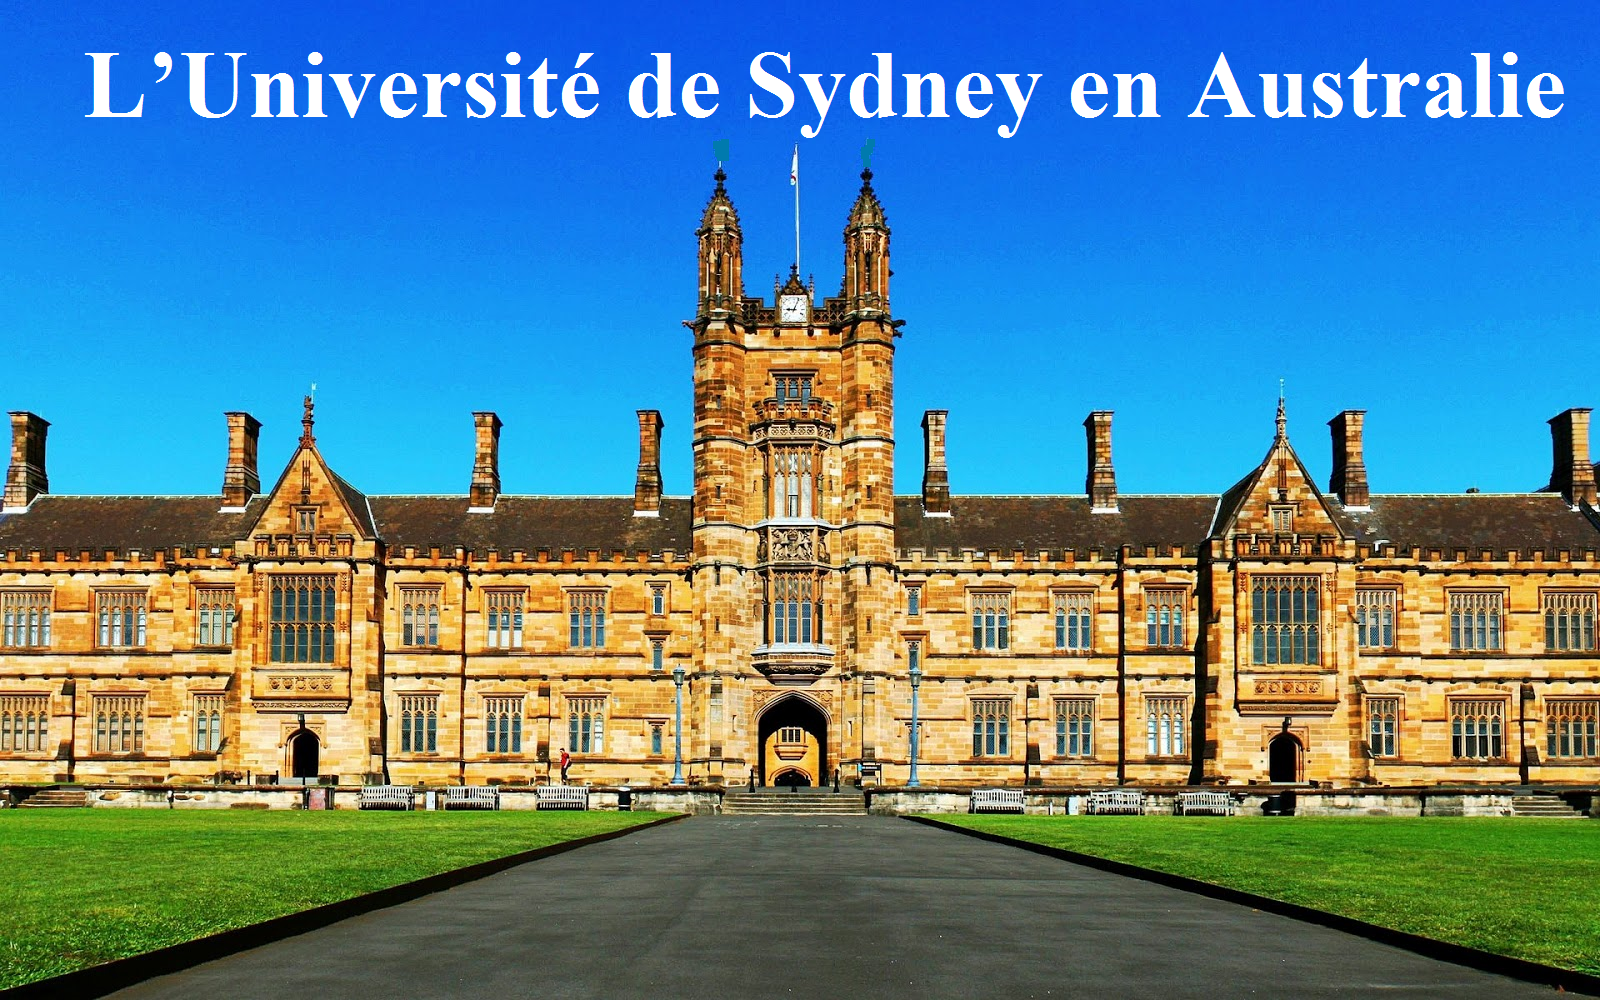 L’Université de Sydney en Australie